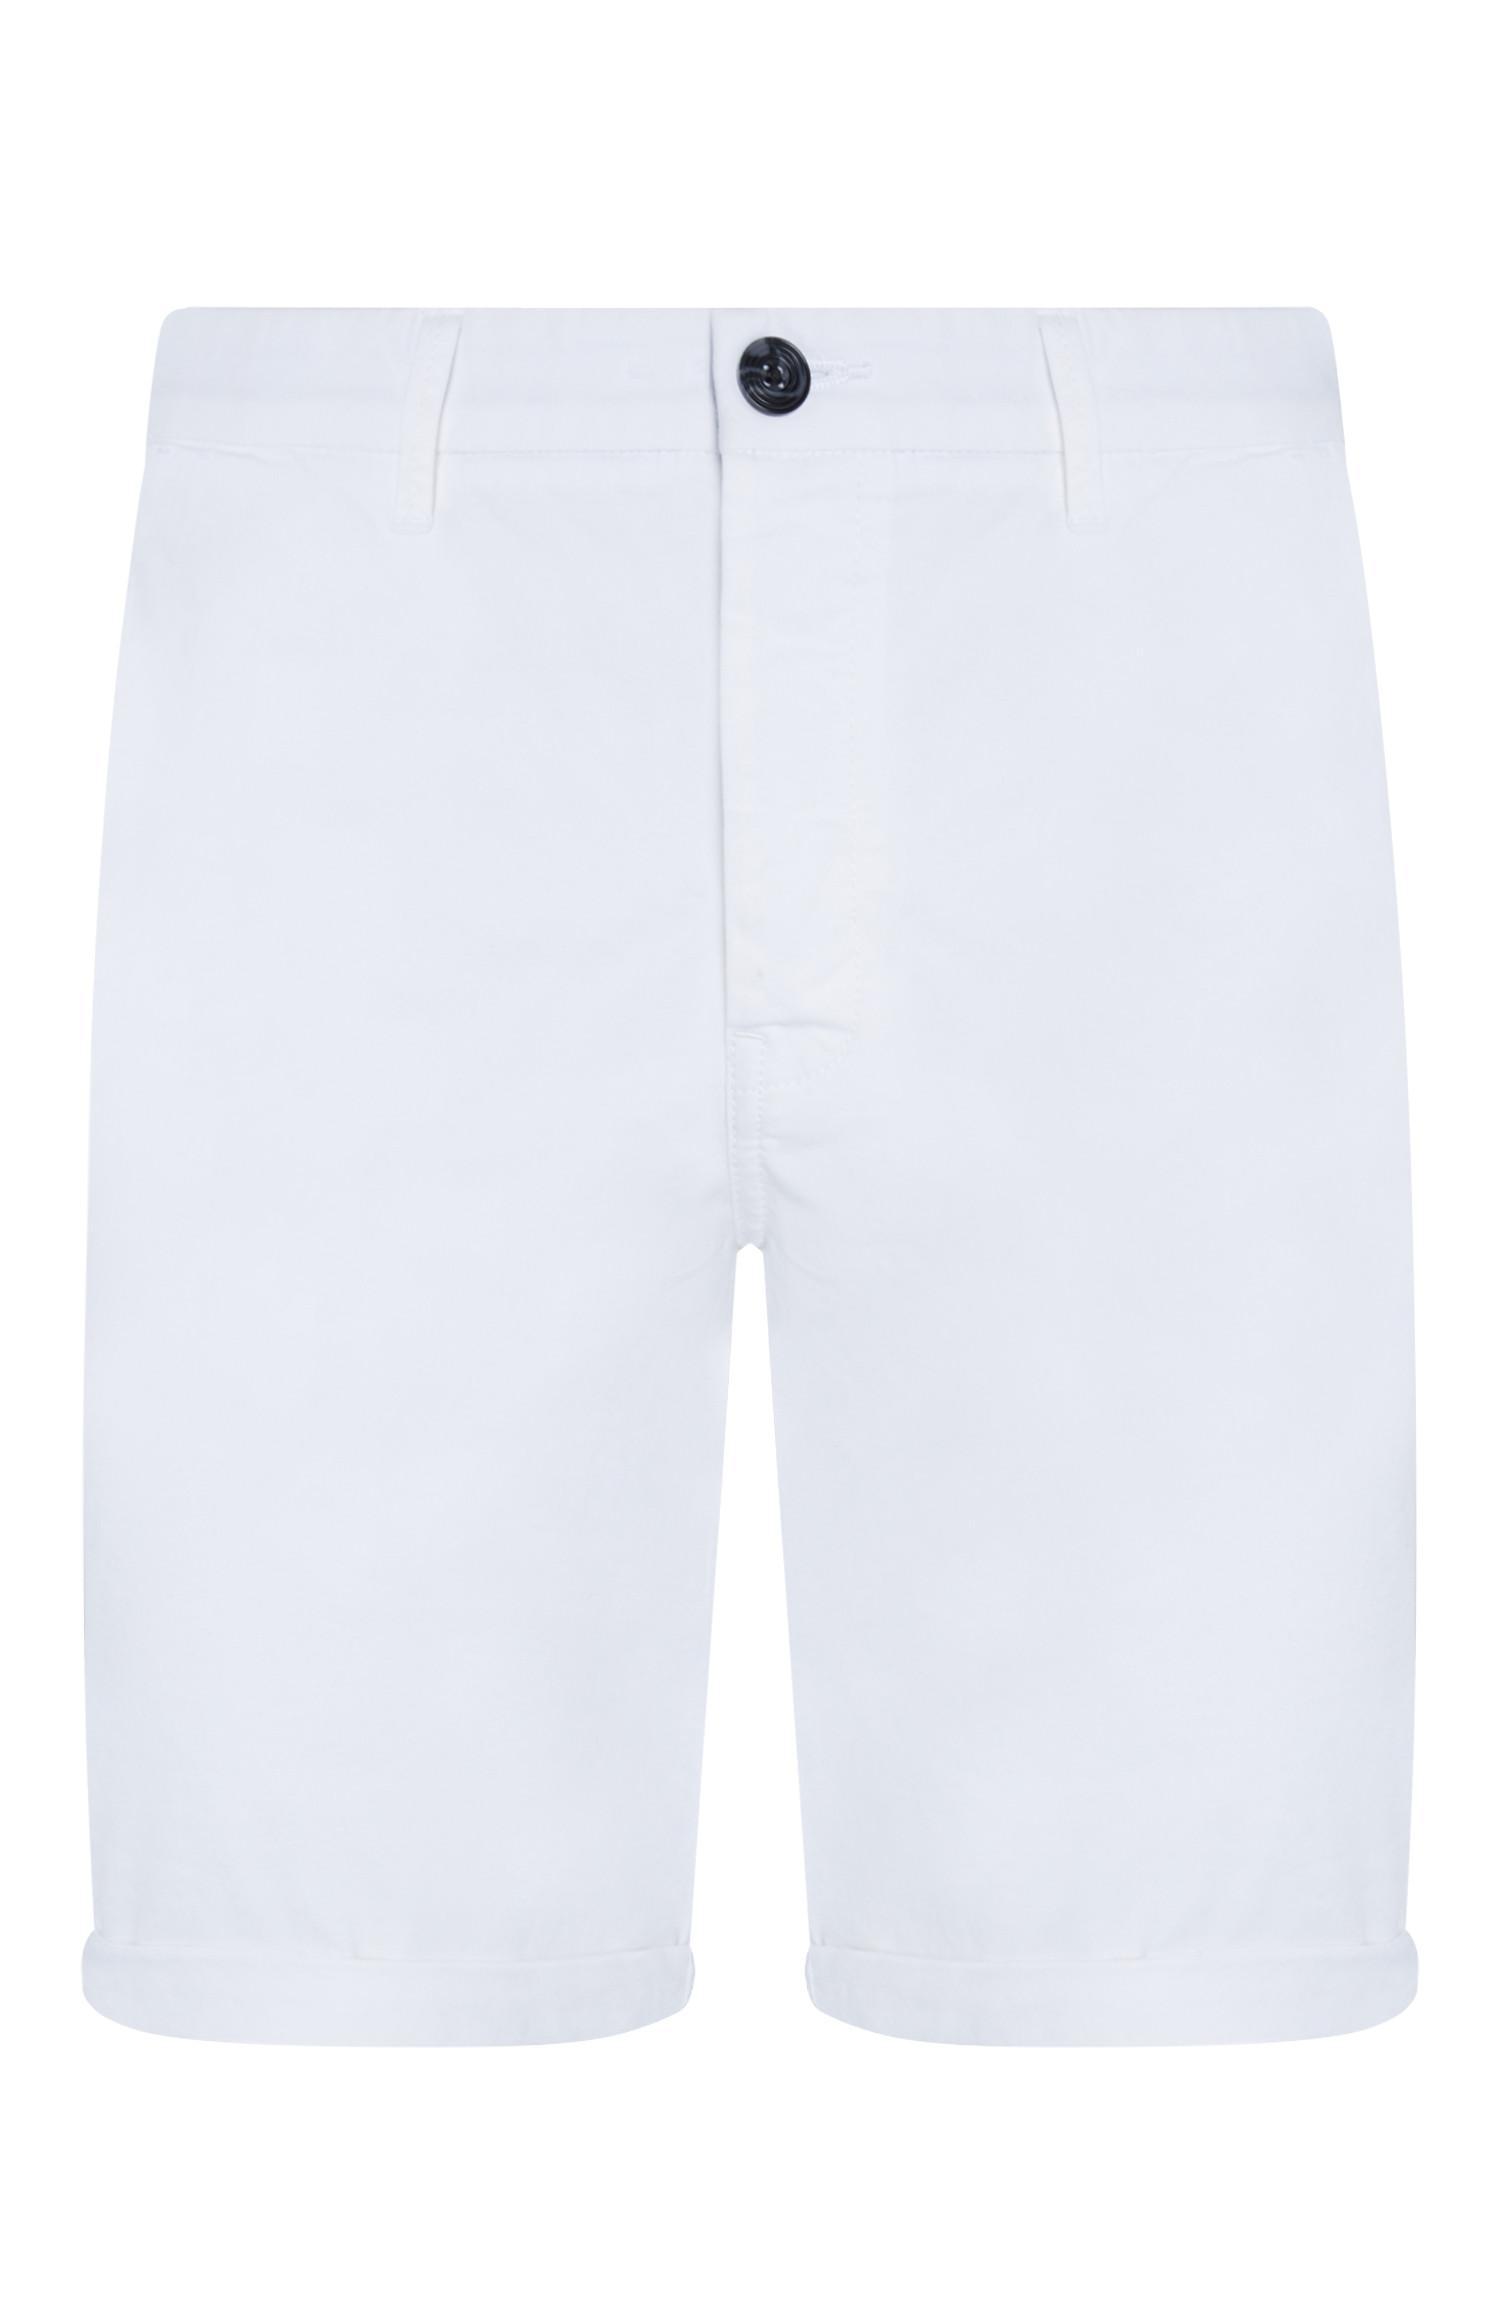 white chino shorts mens uk